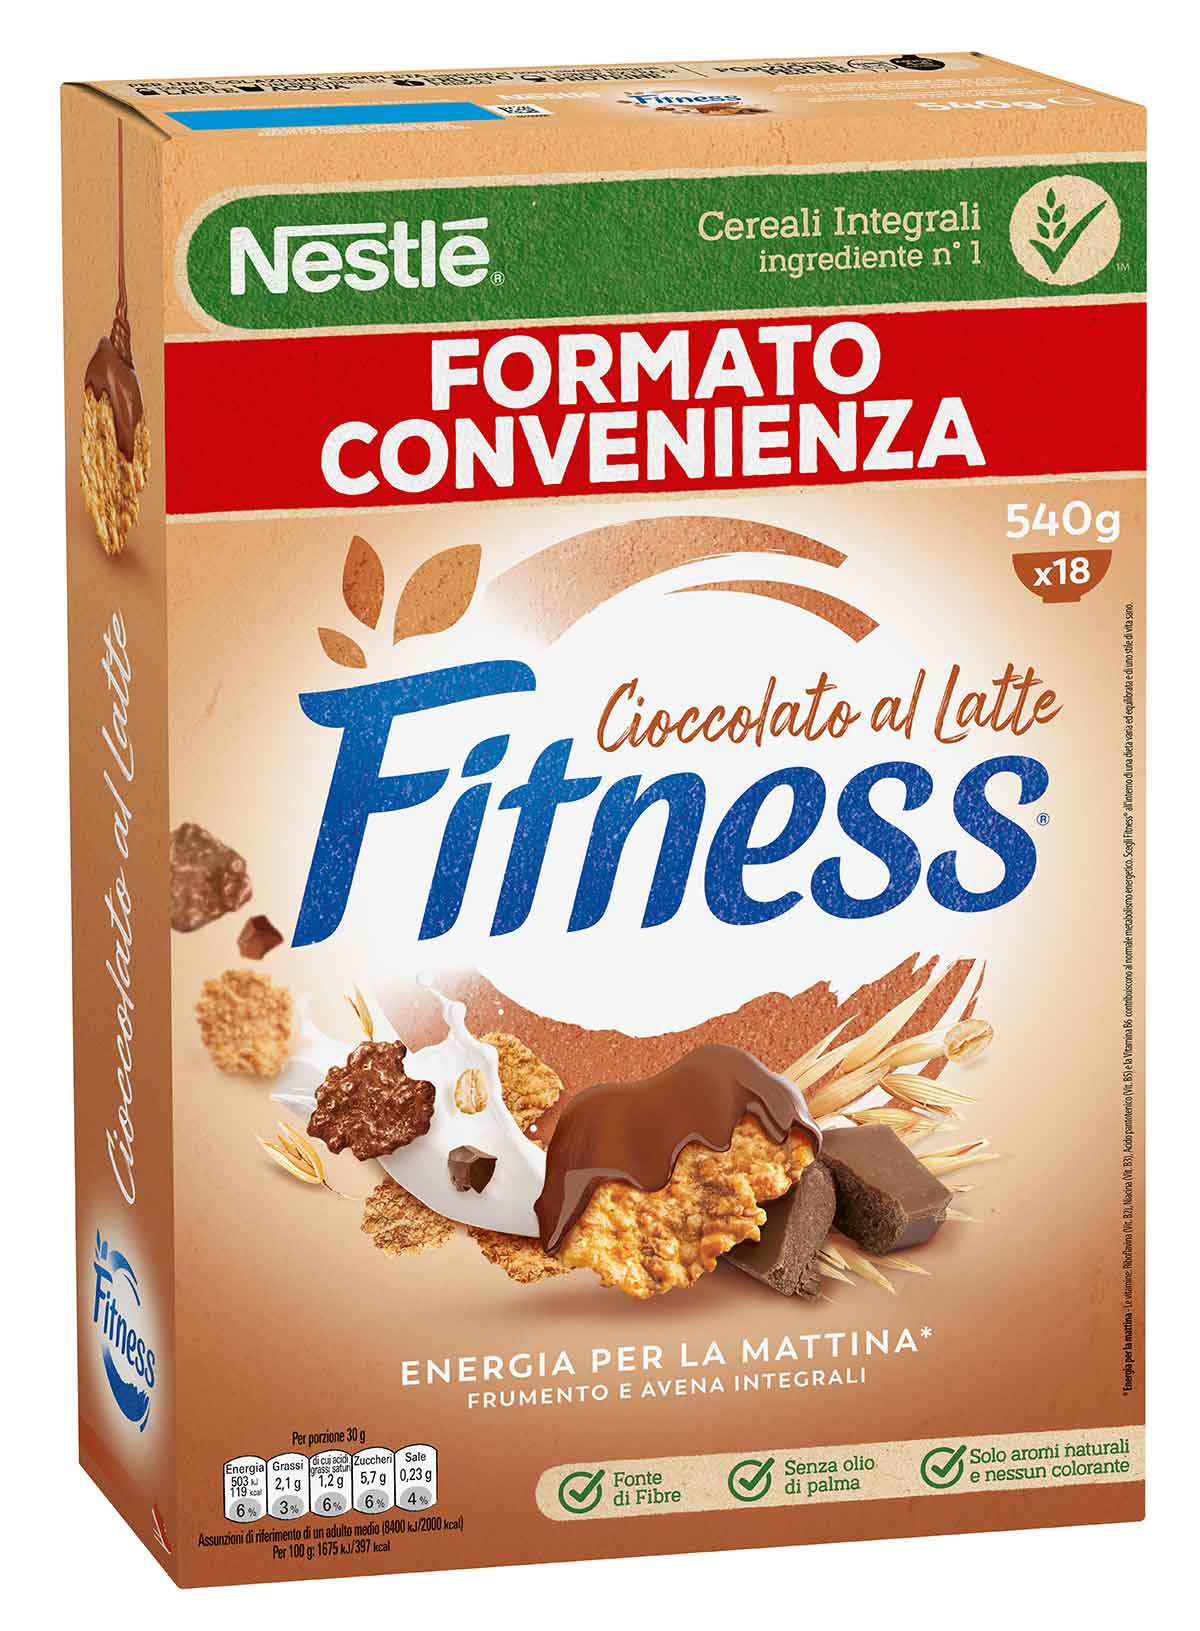 Fitness® CIOCCOLATO AL LATTE Cereali con frumento e avena integrali e fiocchi ricoperti al cioccolato al latte 540g